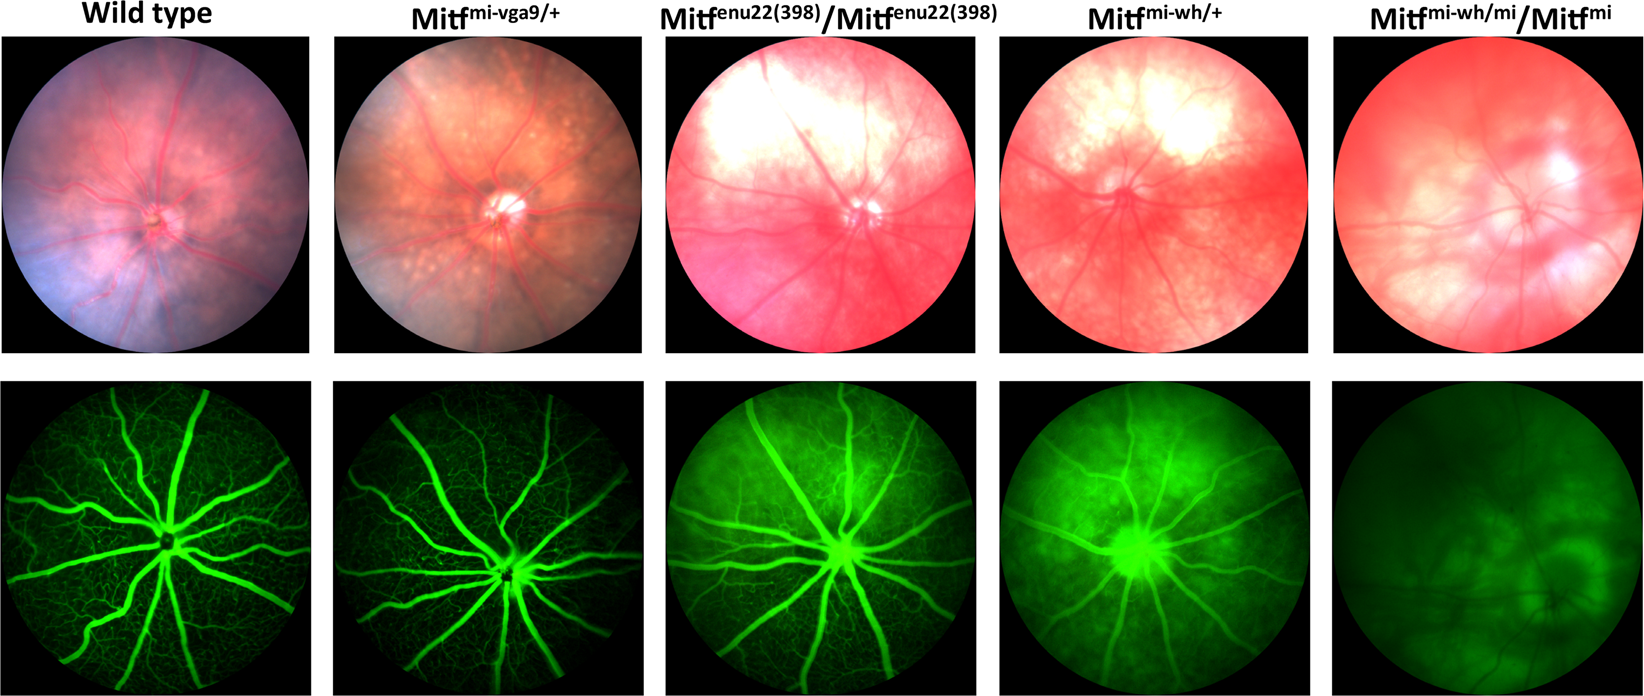 fundus pigmentation and retinal vasculature